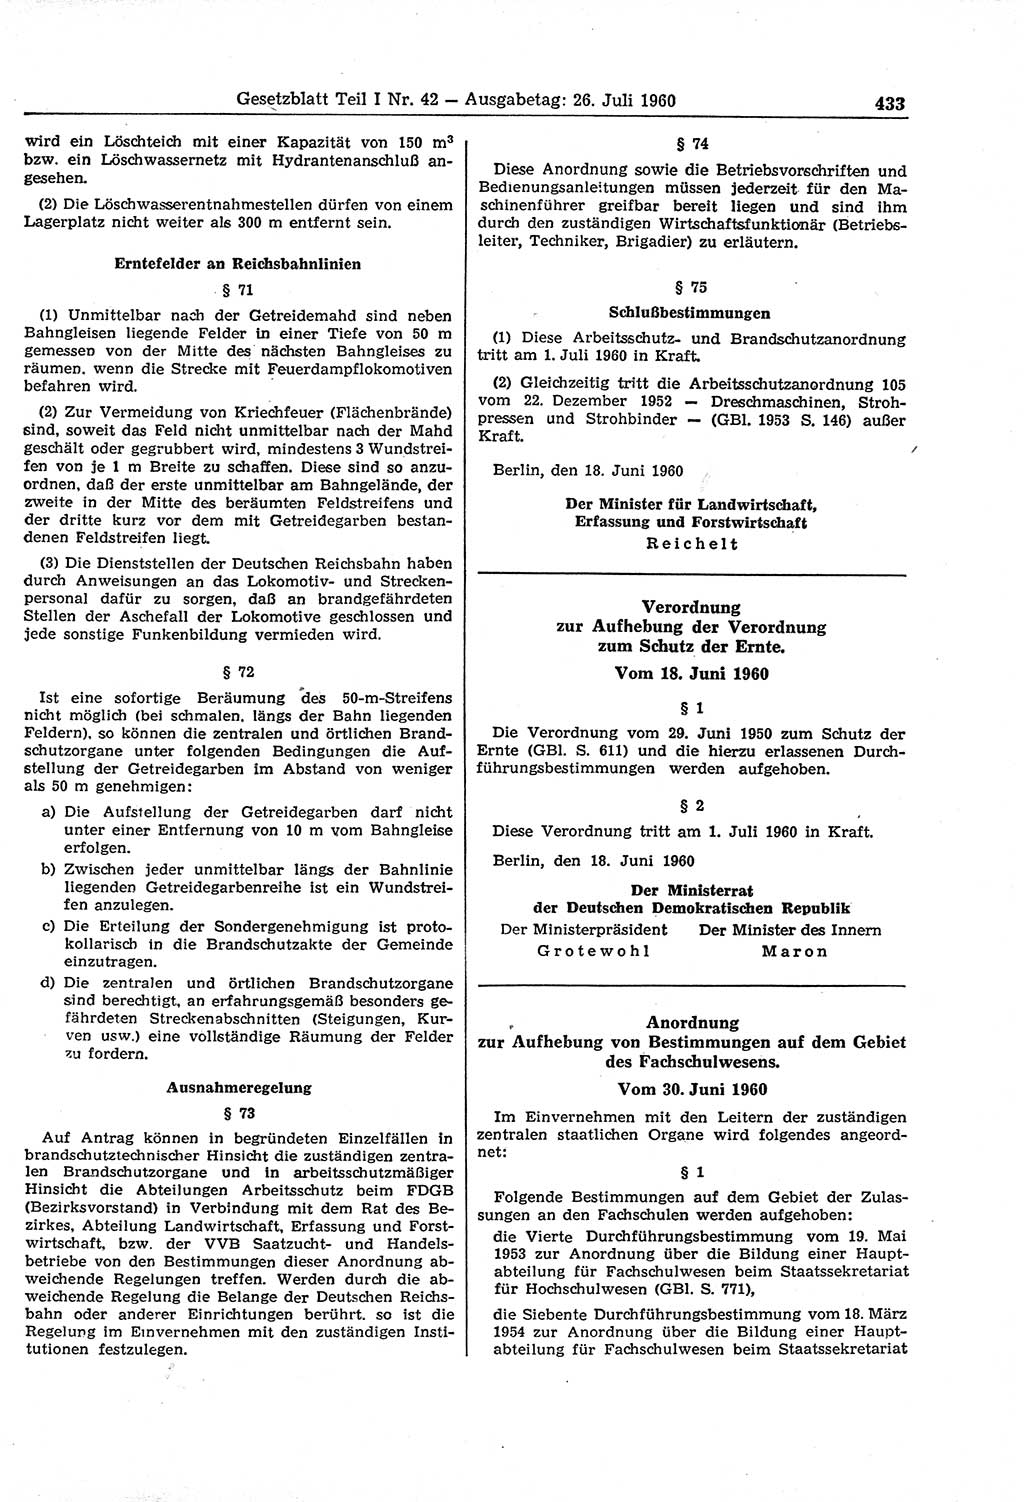 Gesetzblatt (GBl.) der Deutschen Demokratischen Republik (DDR) Teil Ⅰ 1960, Seite 433 (GBl. DDR Ⅰ 1960, S. 433)